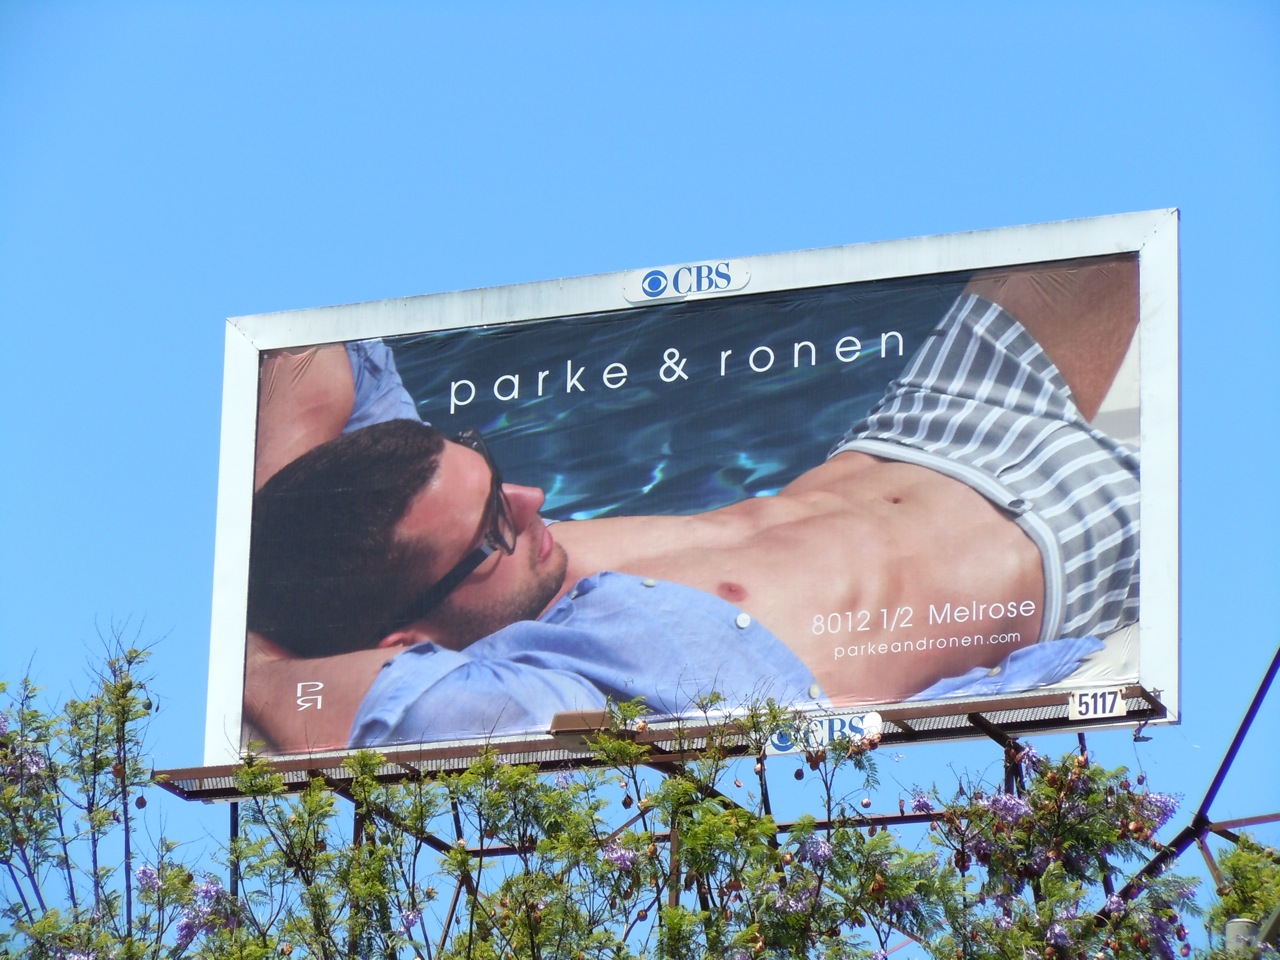 http://2.bp.blogspot.com/-1hHaLORRUEA/T9ksple0zUI/AAAAAAAAsdc/8HNdcaG5CxM/s1600/parke+ronen+swimwear+model+billboard.jpg